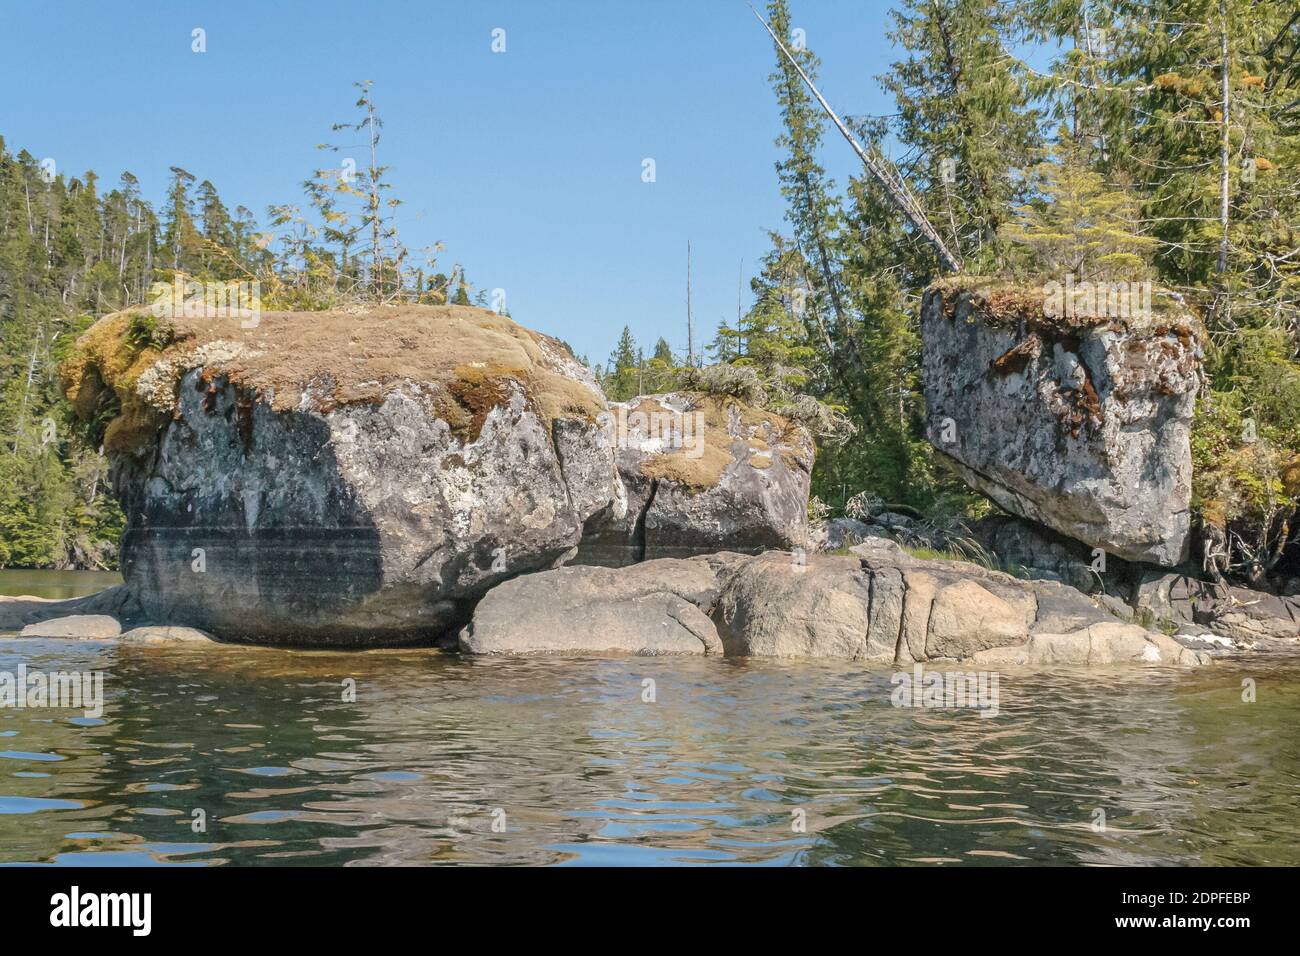 Drei riesige, mit Moos bewachsene, strukturierte Granitfelsen stehen dicht beieinander an einer felsigen Küste in einem abgelegenen Wildnisgebiet an der Küste von British Columbia. Stockfoto